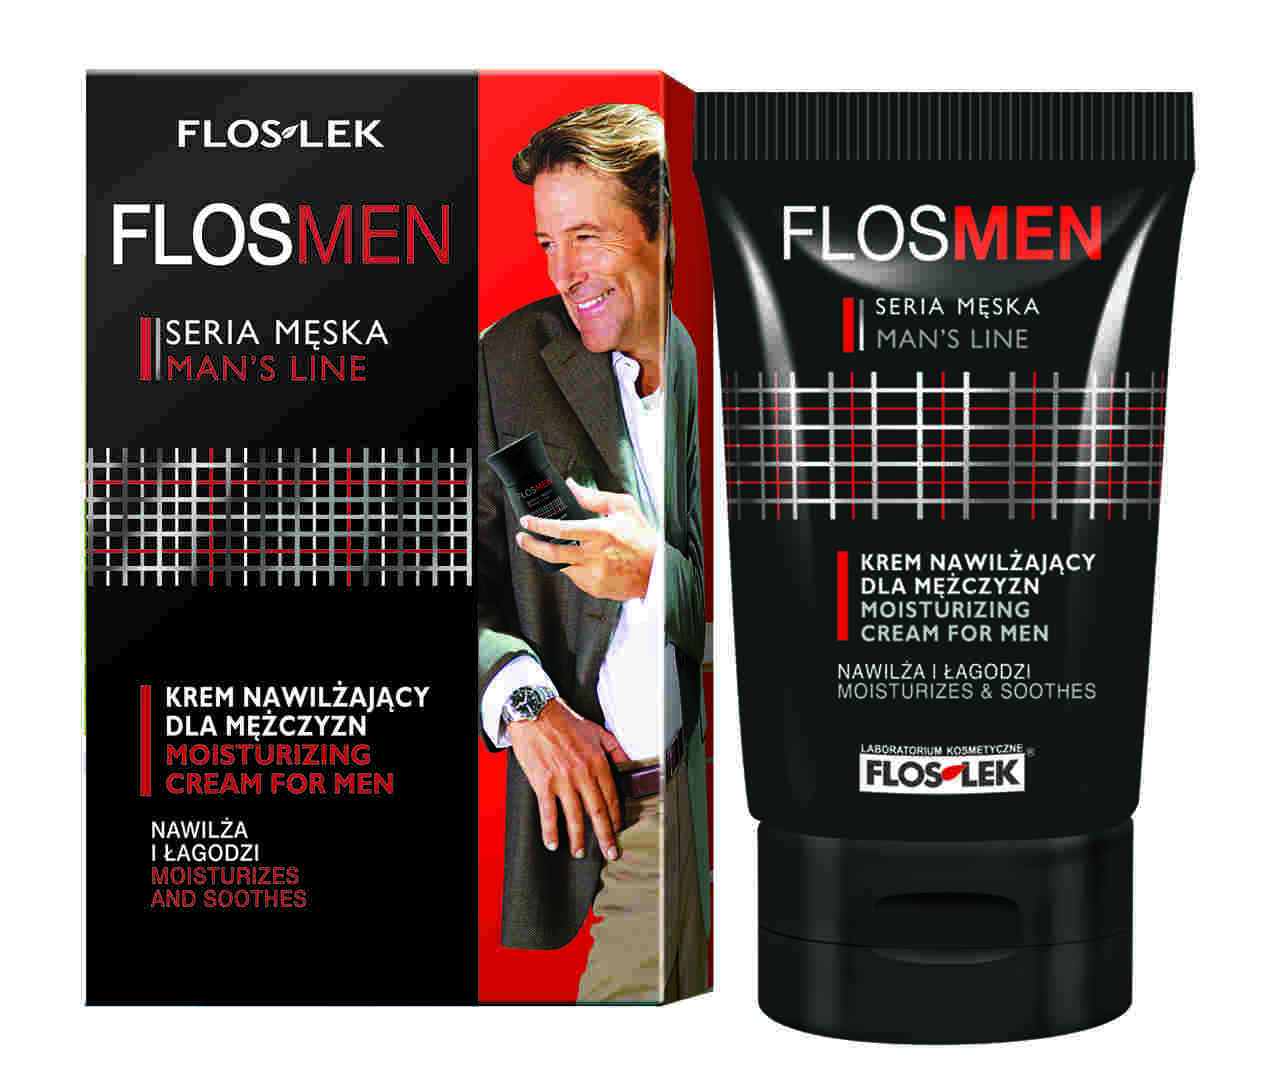 Flos-Lek Flosmen: Krem nawilżajacy dla mężczyzn 50ml